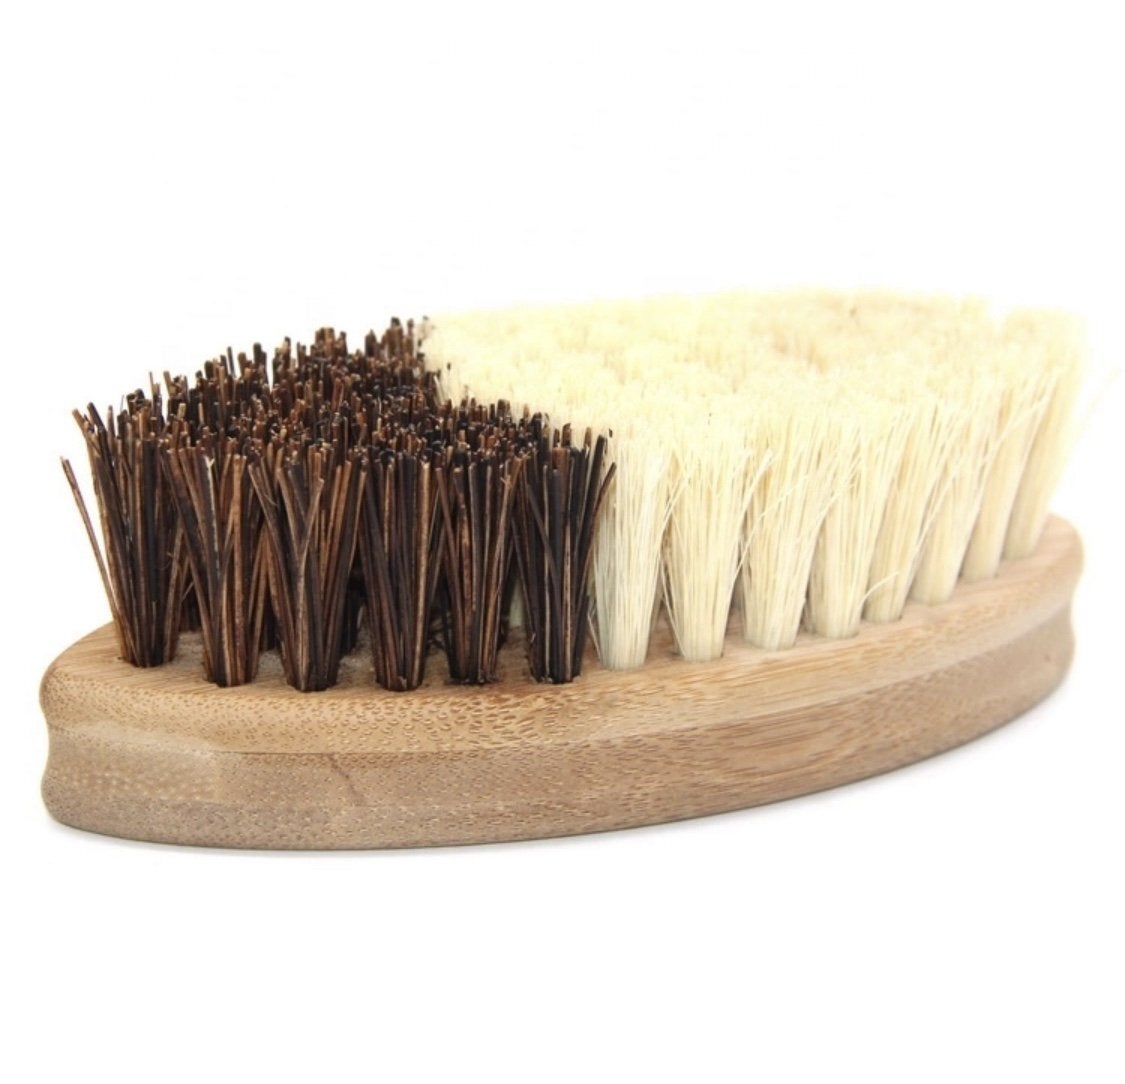 Bamboo & Sisal Round Vegetable Scrub Brush